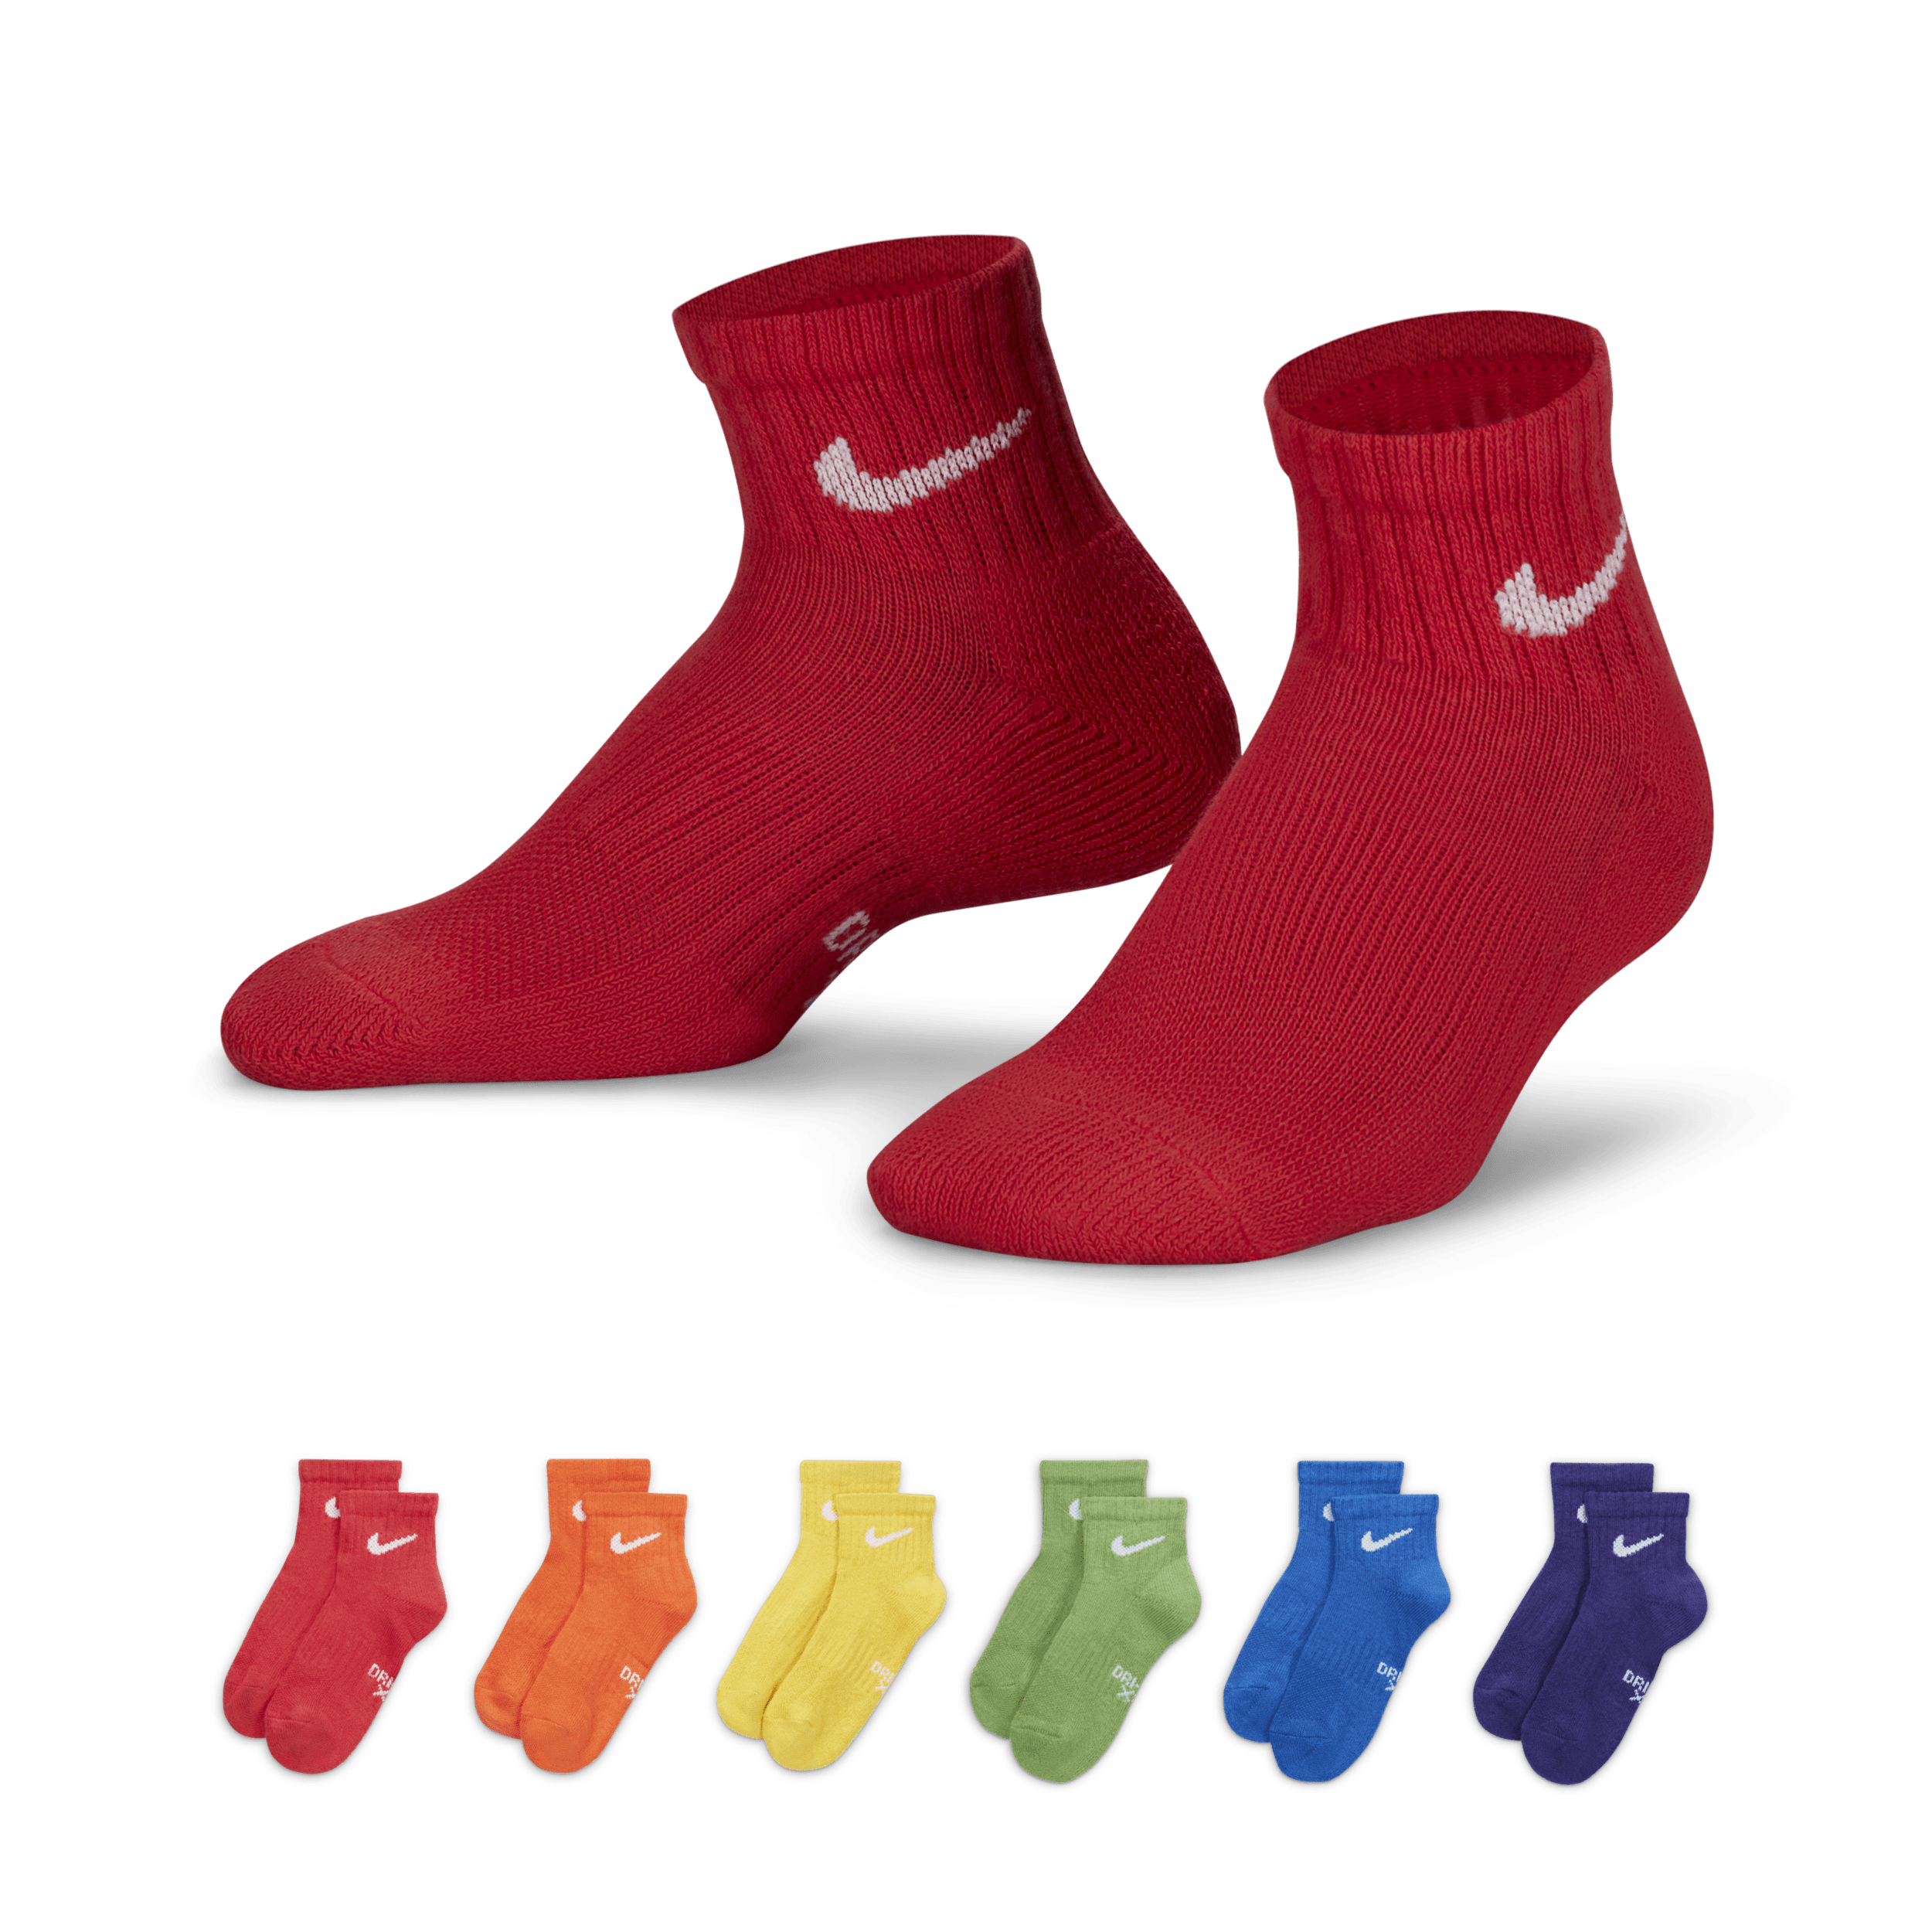 Calze alla caviglia Nike Dri Fit – Bambino/a (confezione da 6) - Multicolore